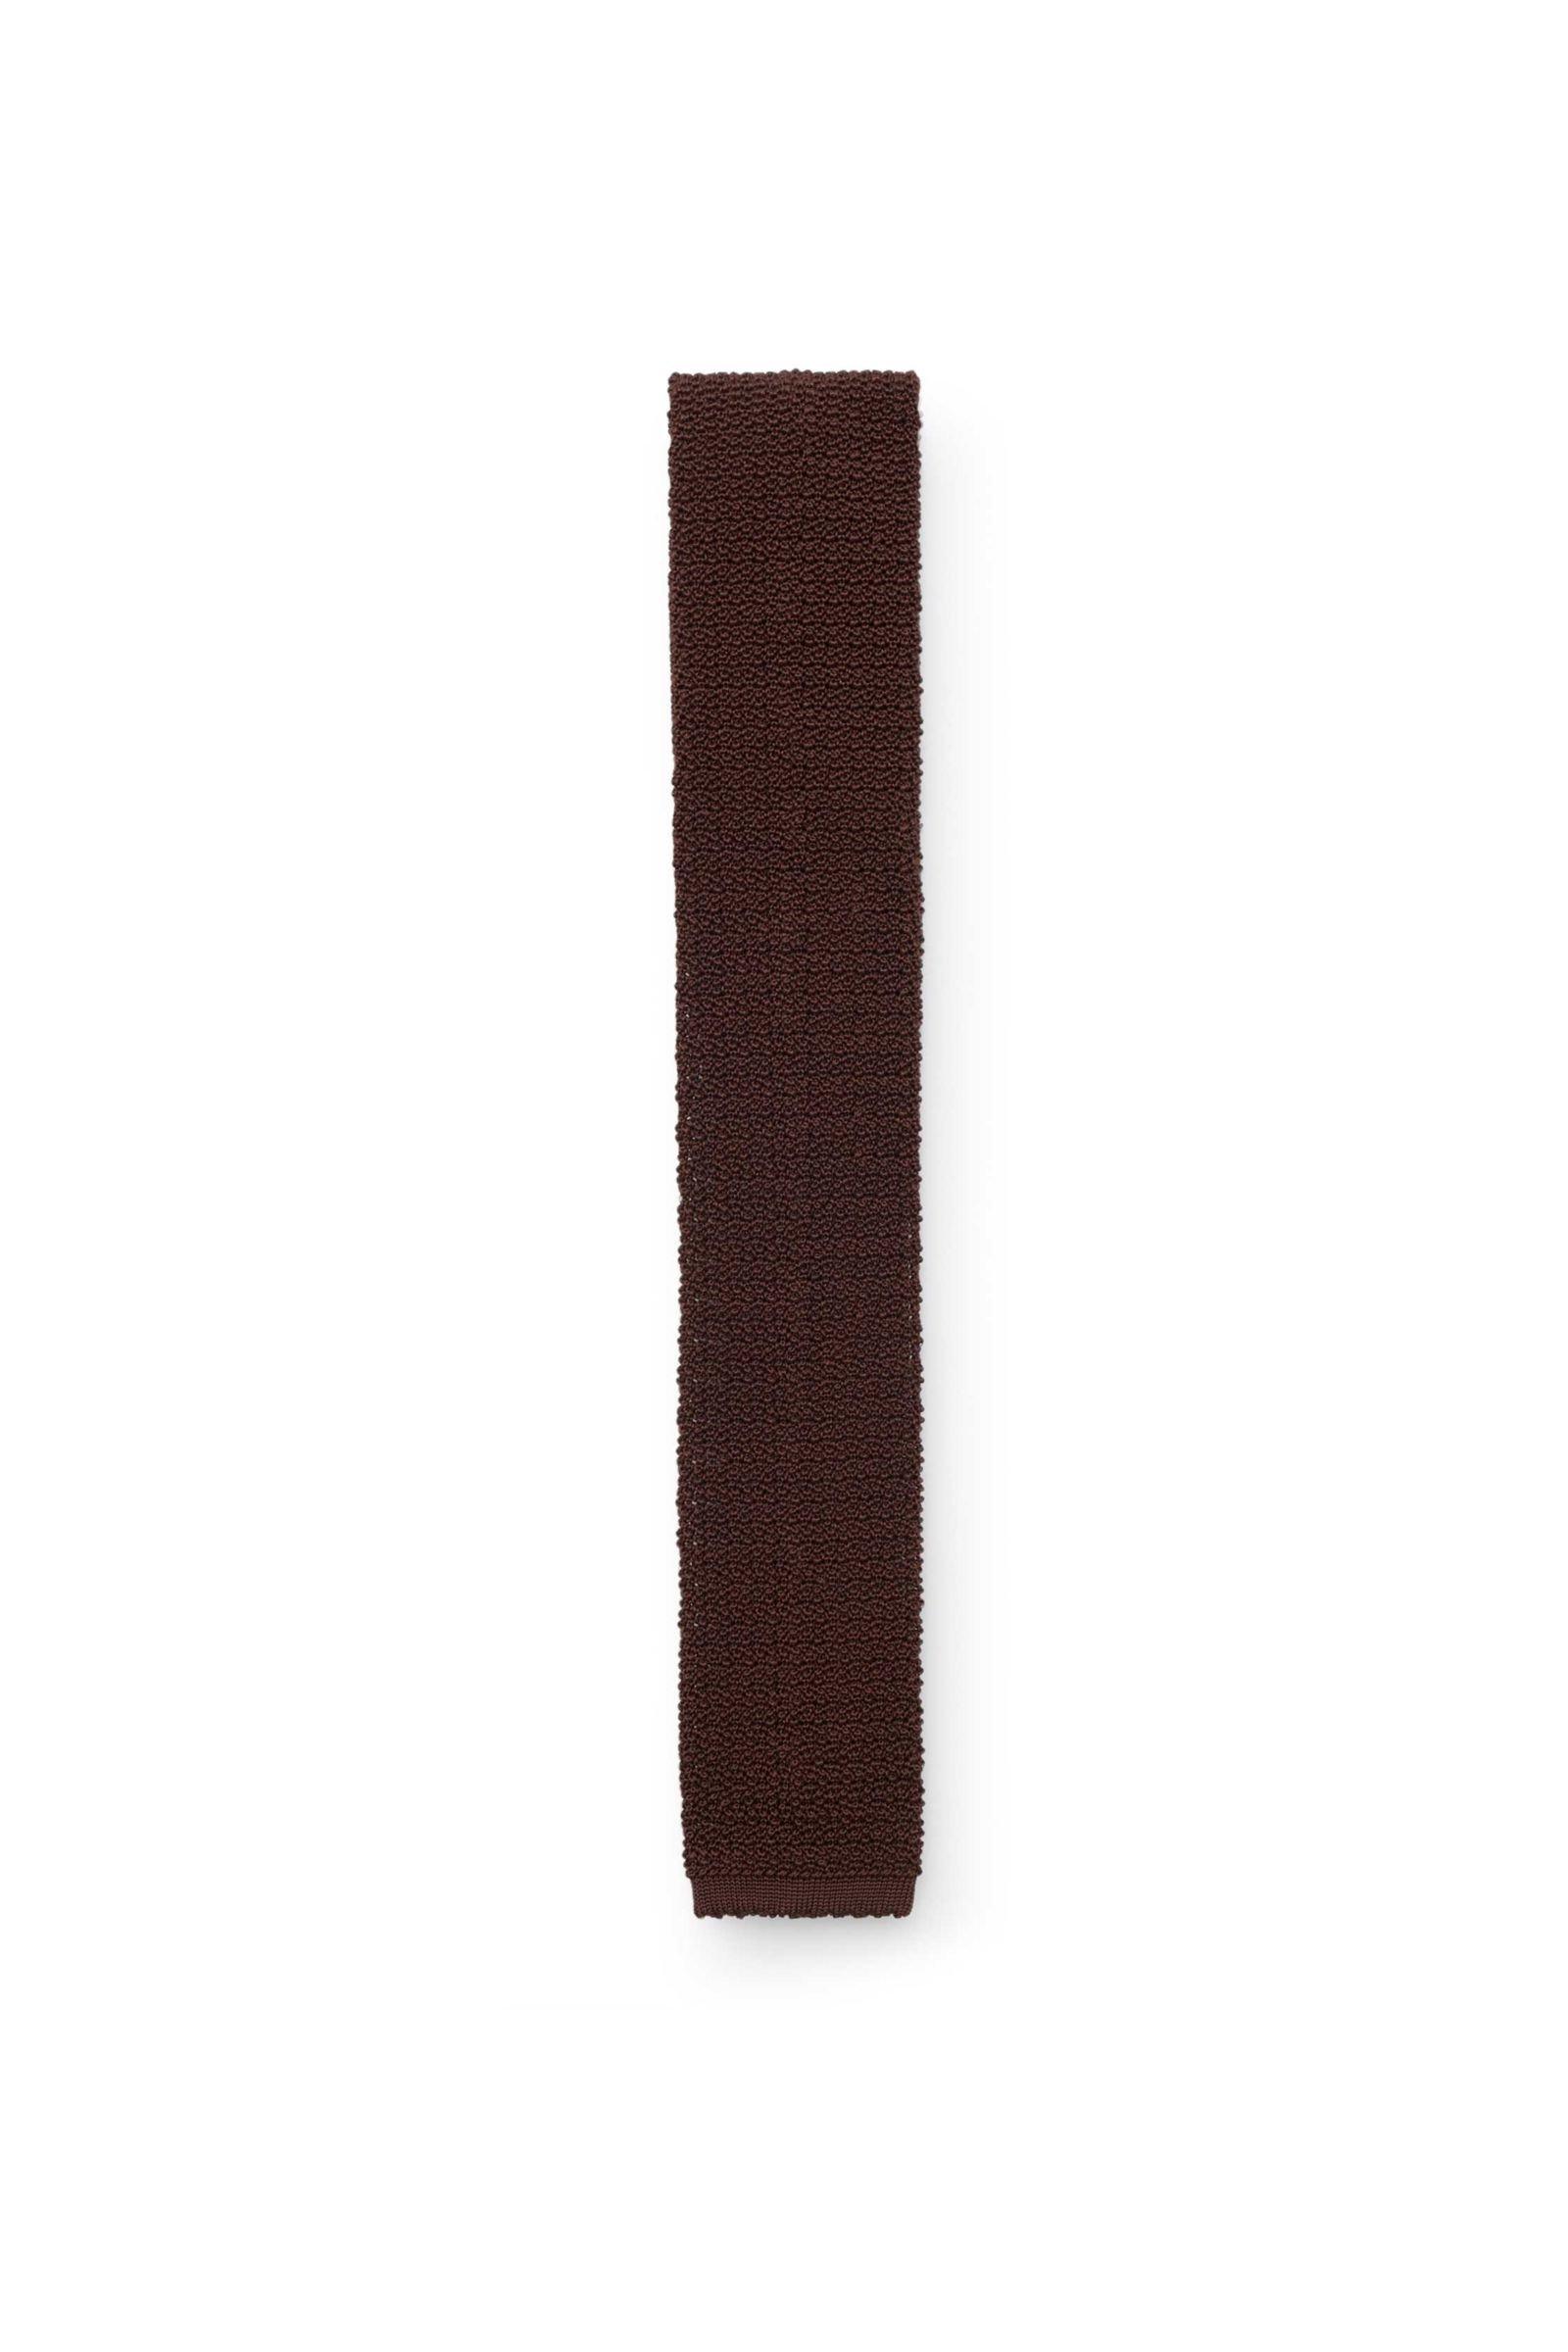 Knitted silk tie dark brown